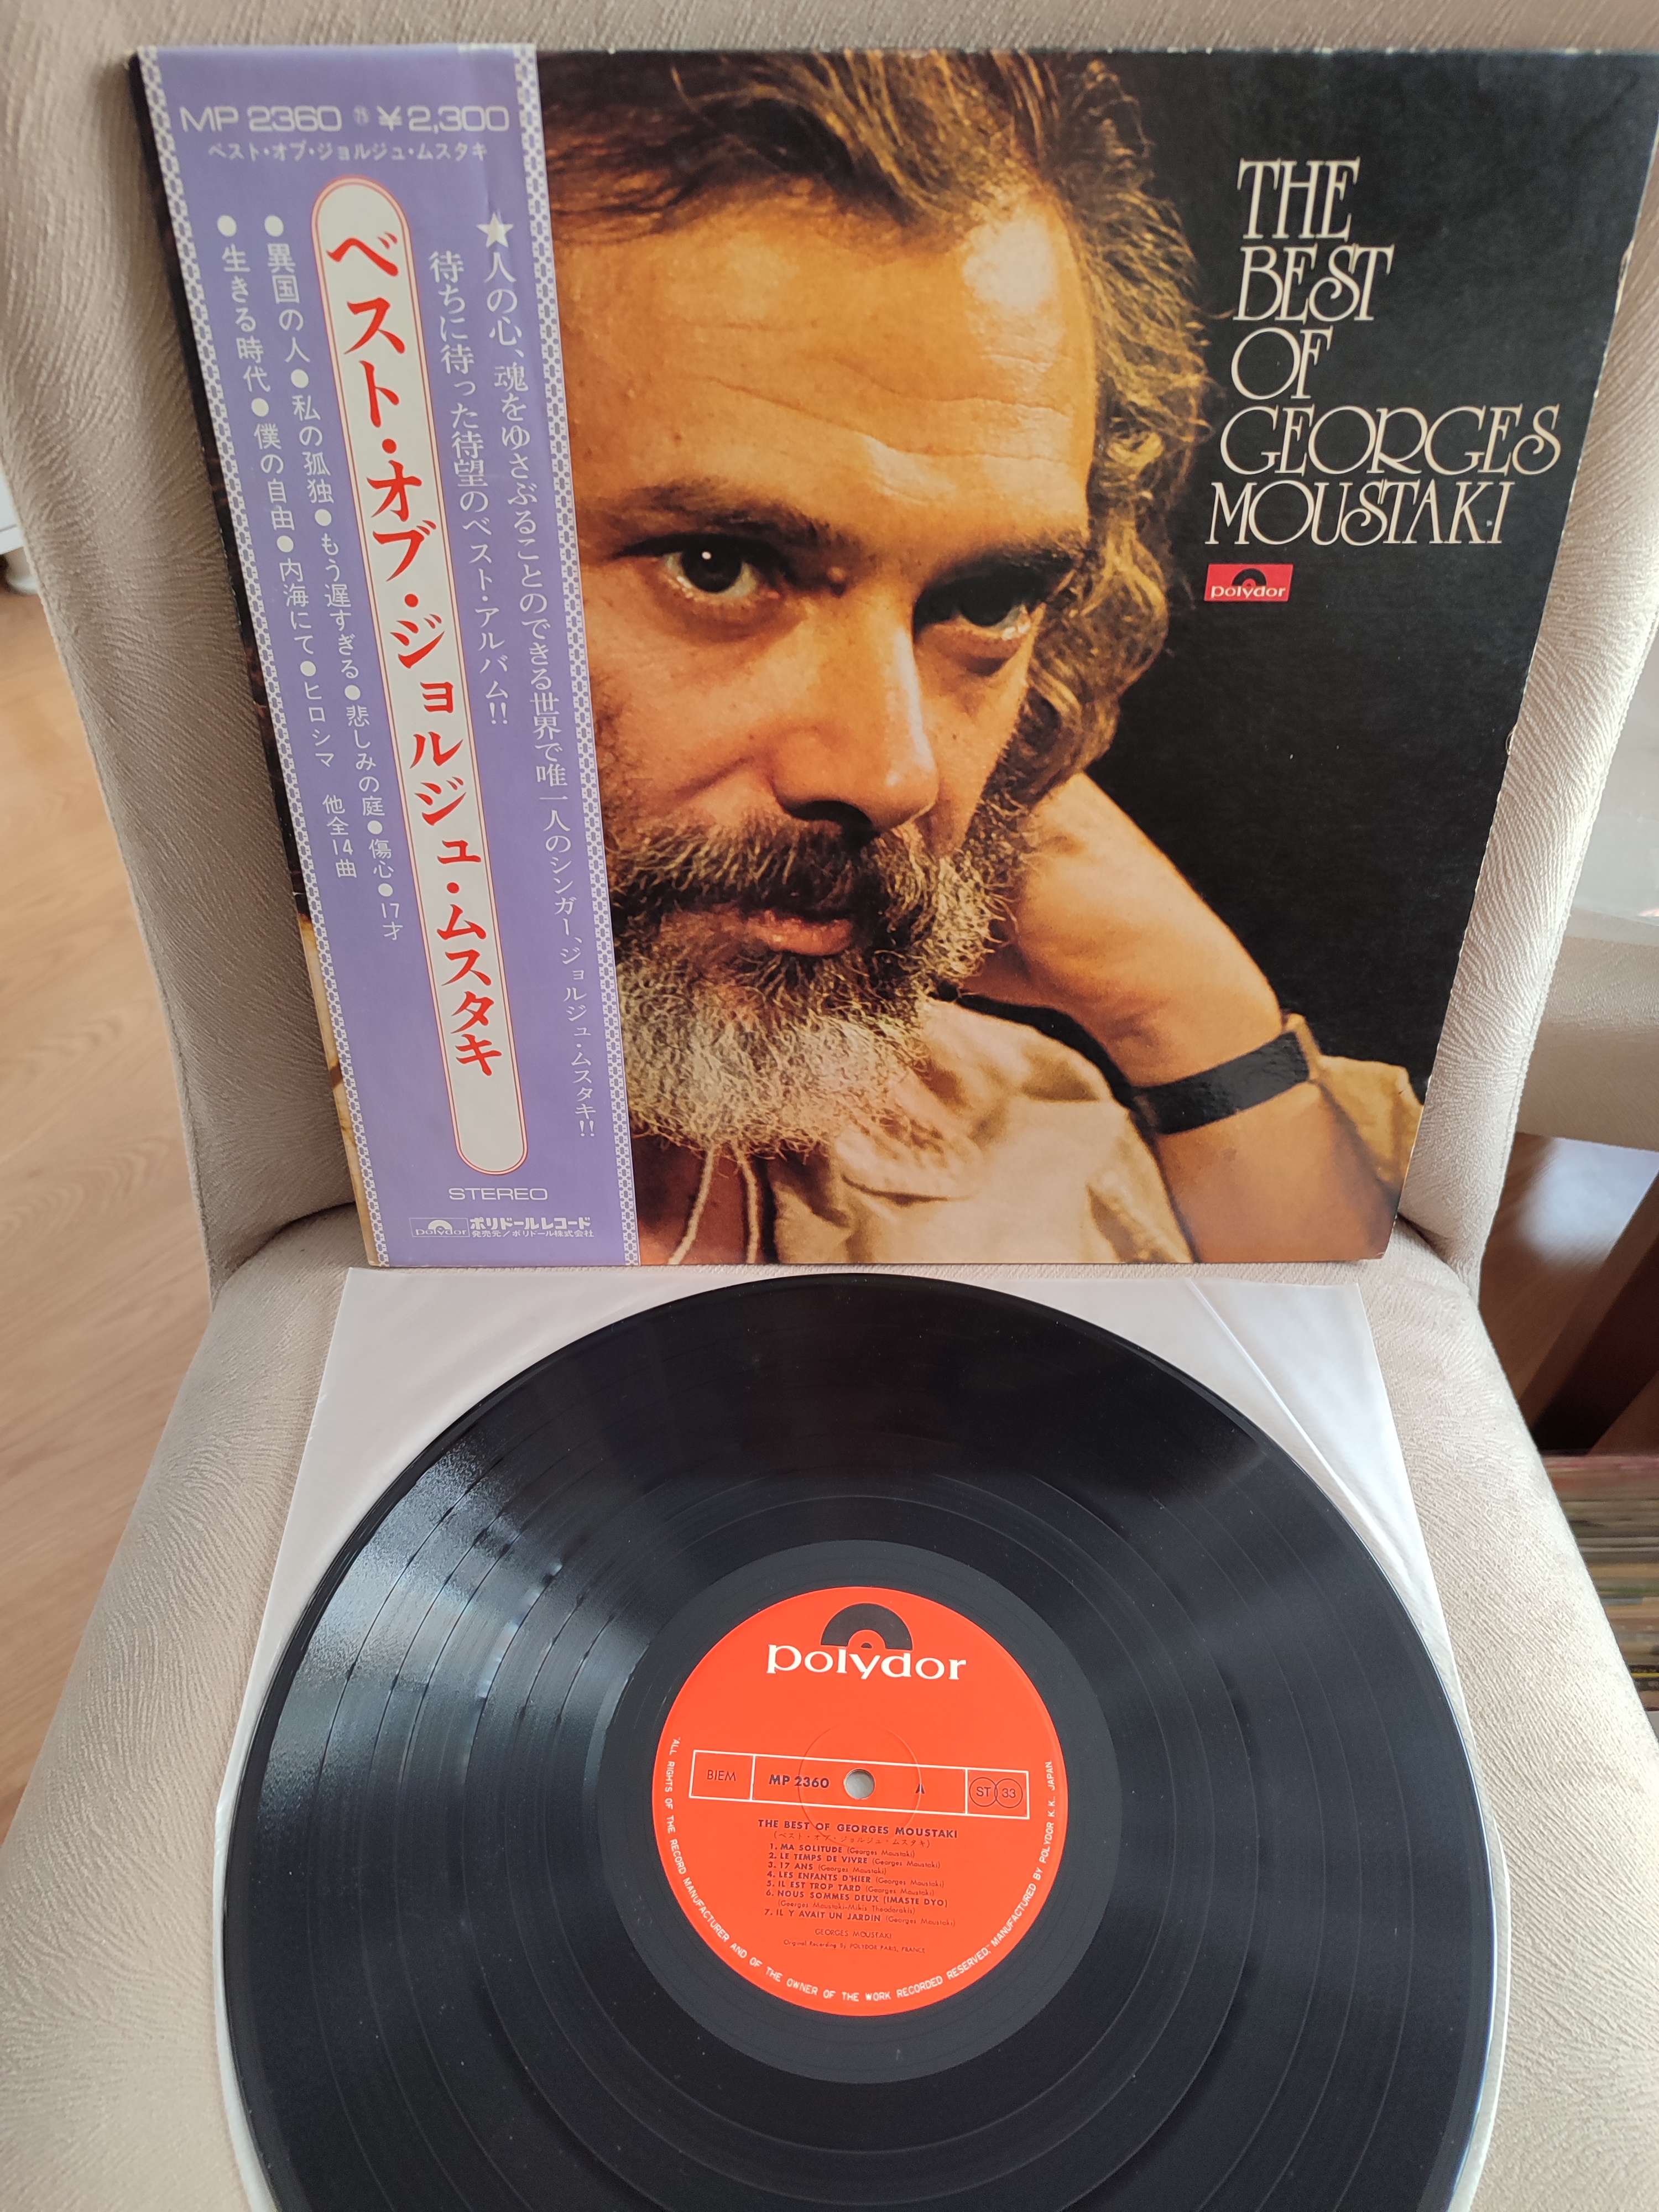 The Best Of GEORGES MOUSTAKI  - 1974 Japonya Basım - 33lük LP Plak Albüm 2. el Obi’li